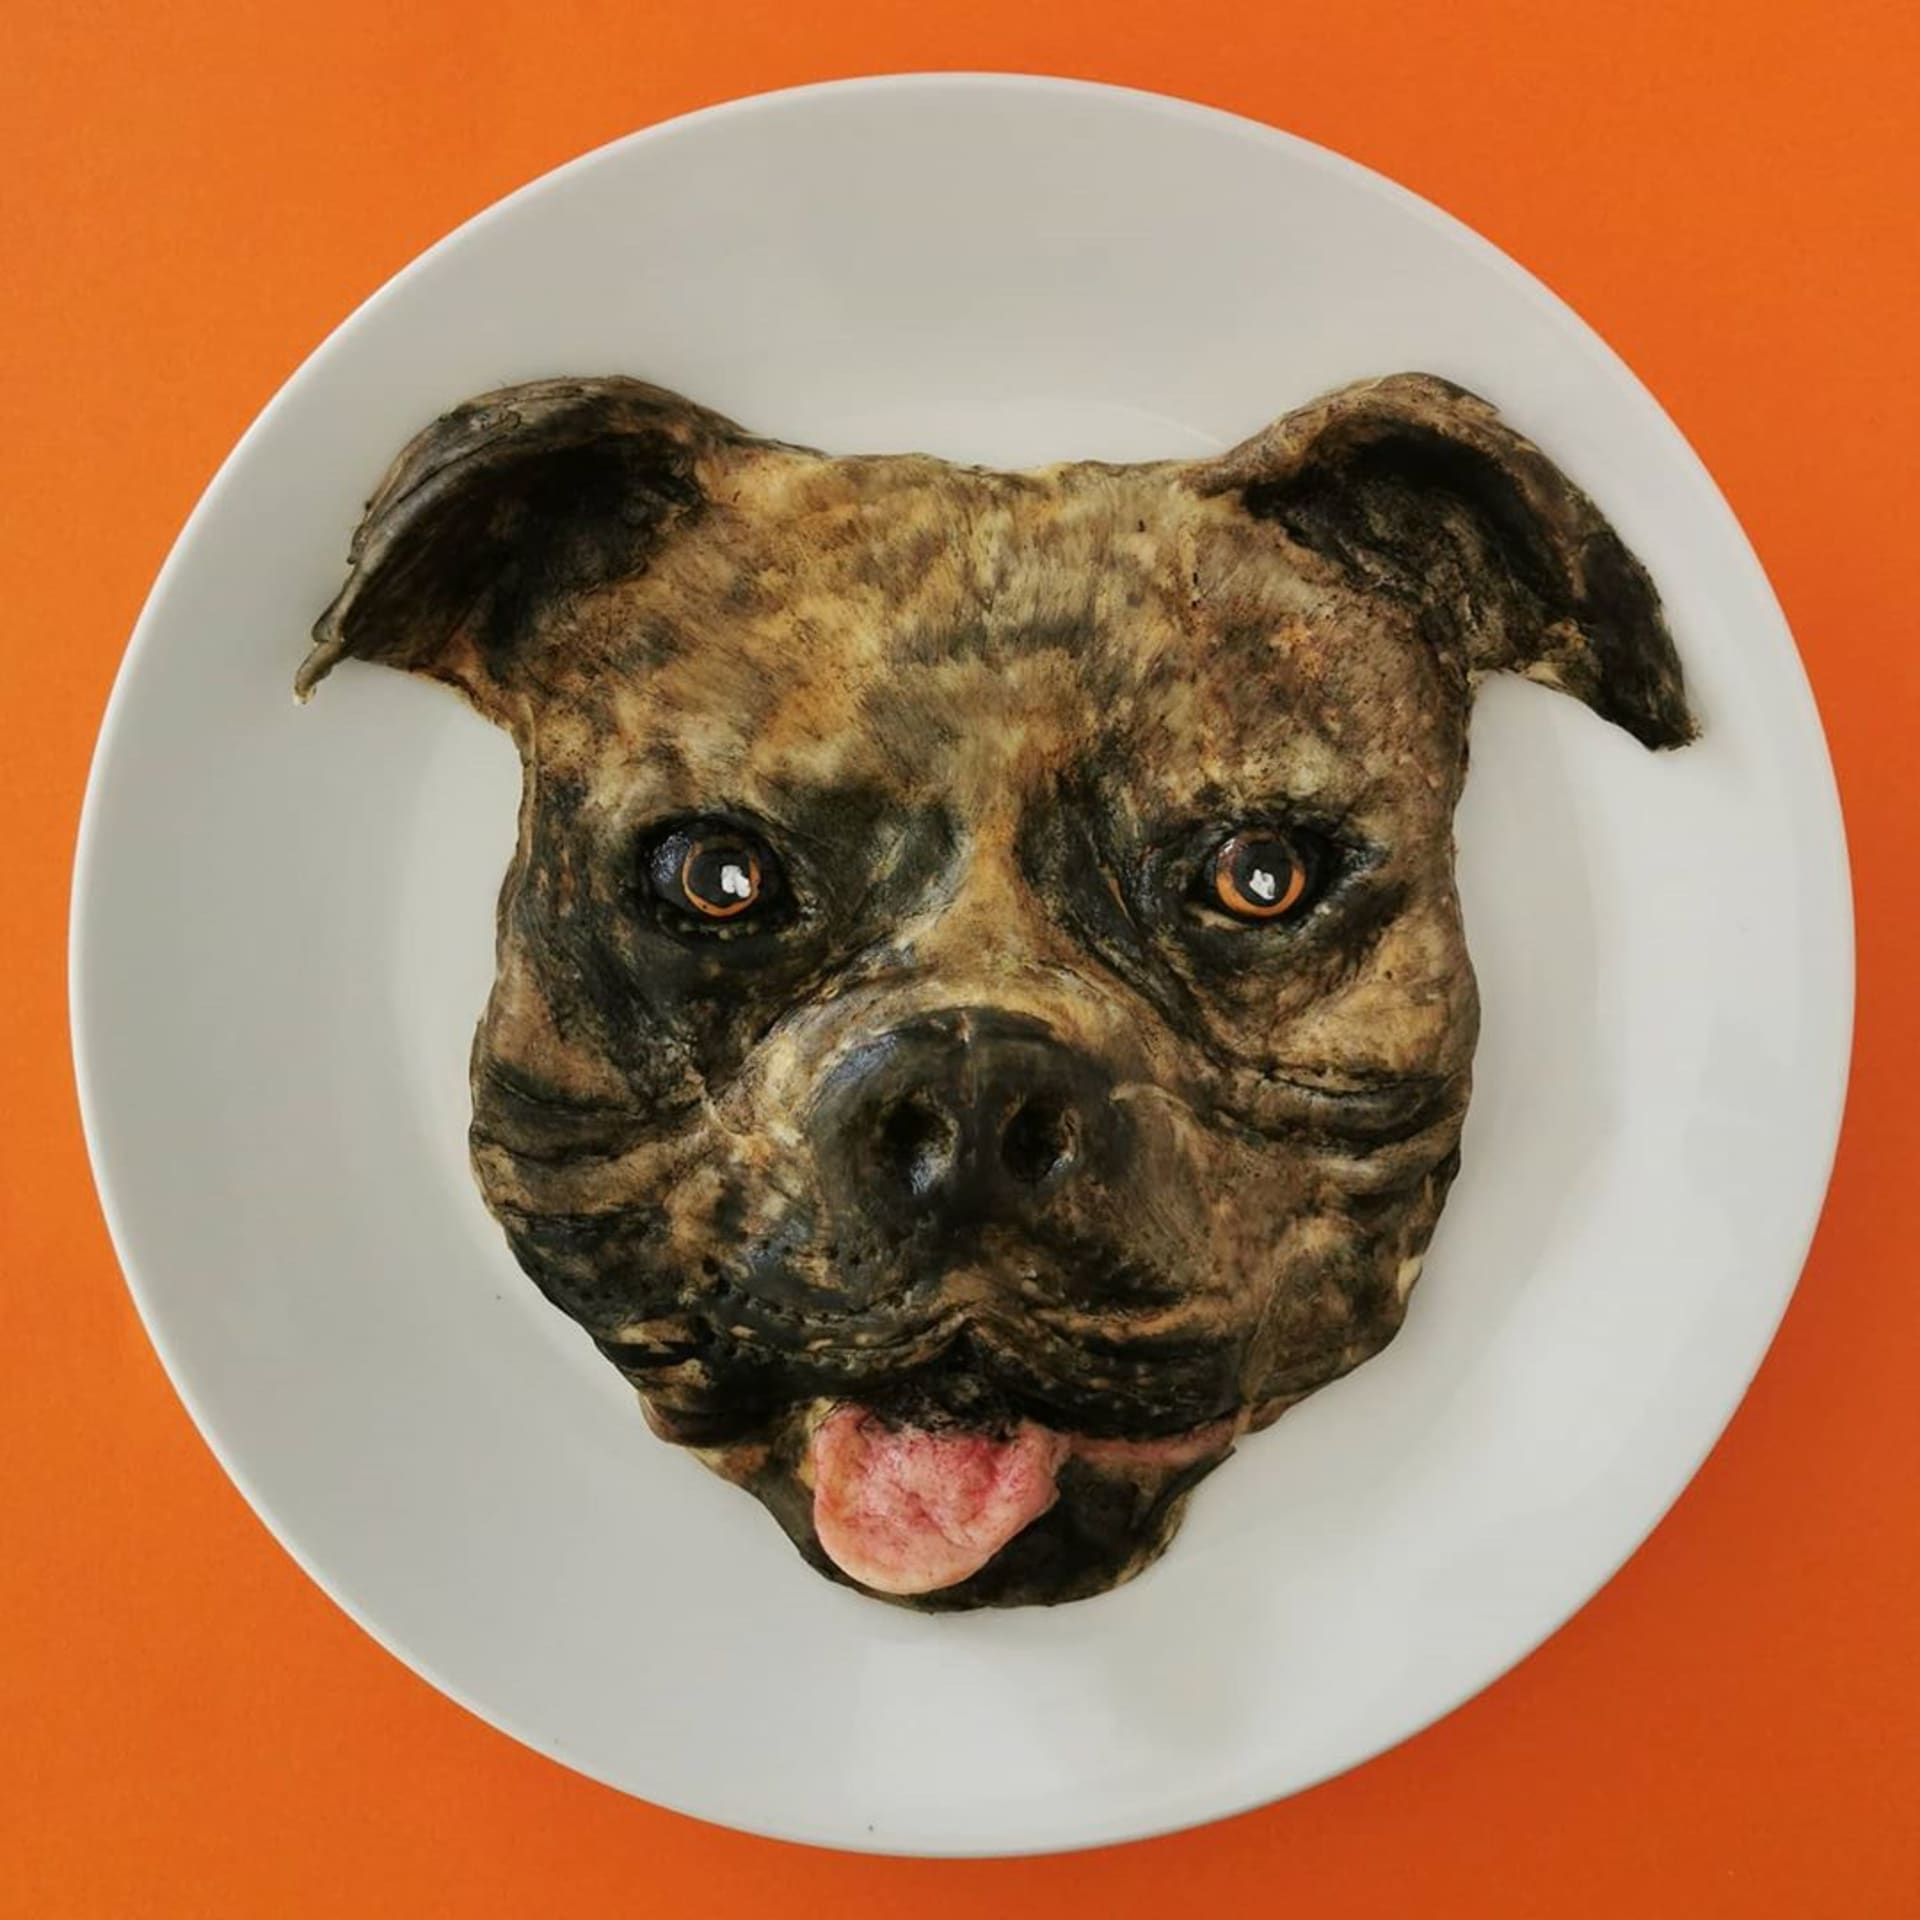 Sladký pes Elvis - z rýžového těsta s čokoládovou polevou